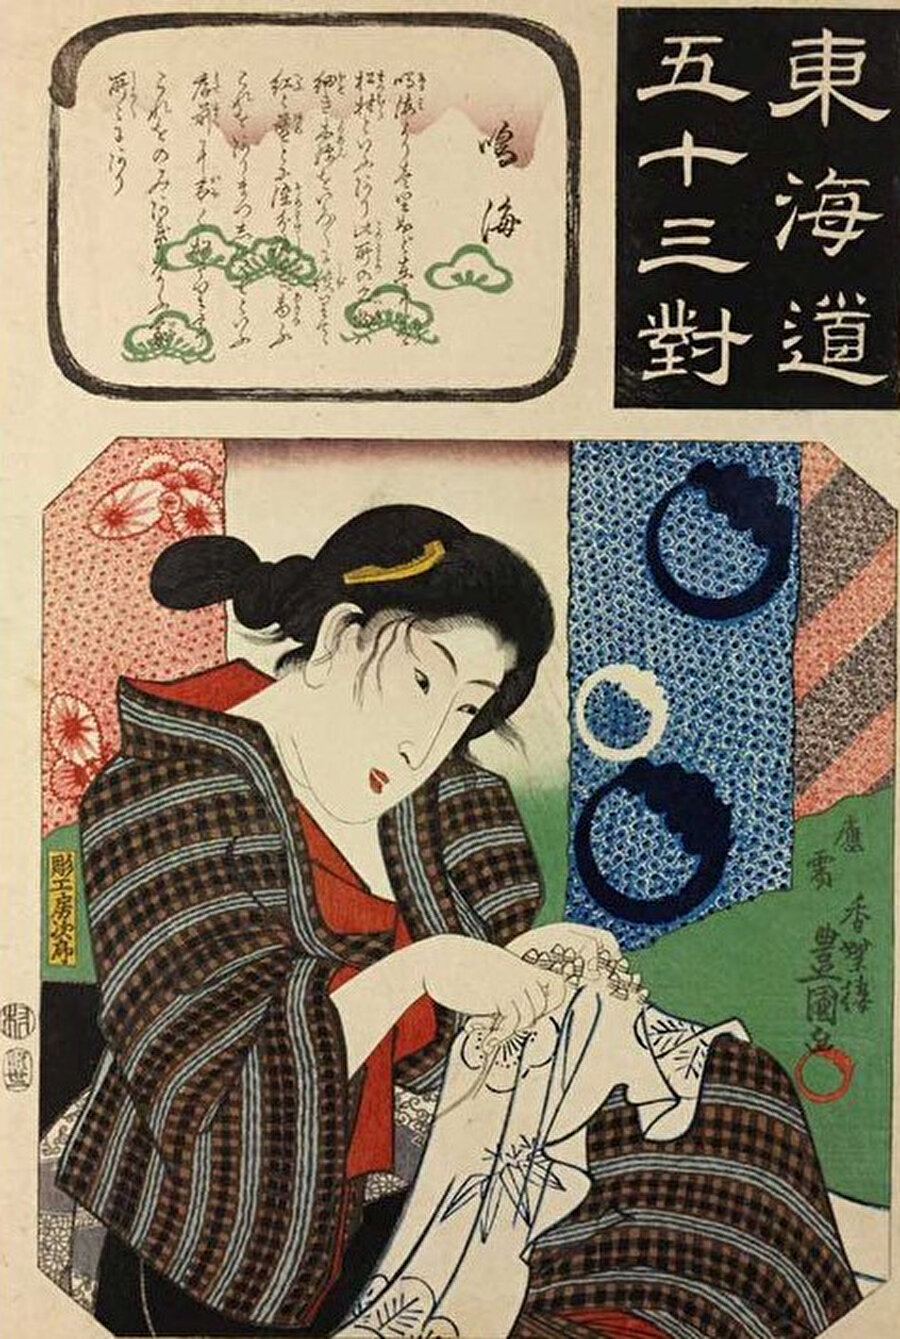 Utagawa Kunisada veya Utagawa Toyokuni III, Edo döneminde yaşamış Japon ukiyo-e sanatçısıydı.